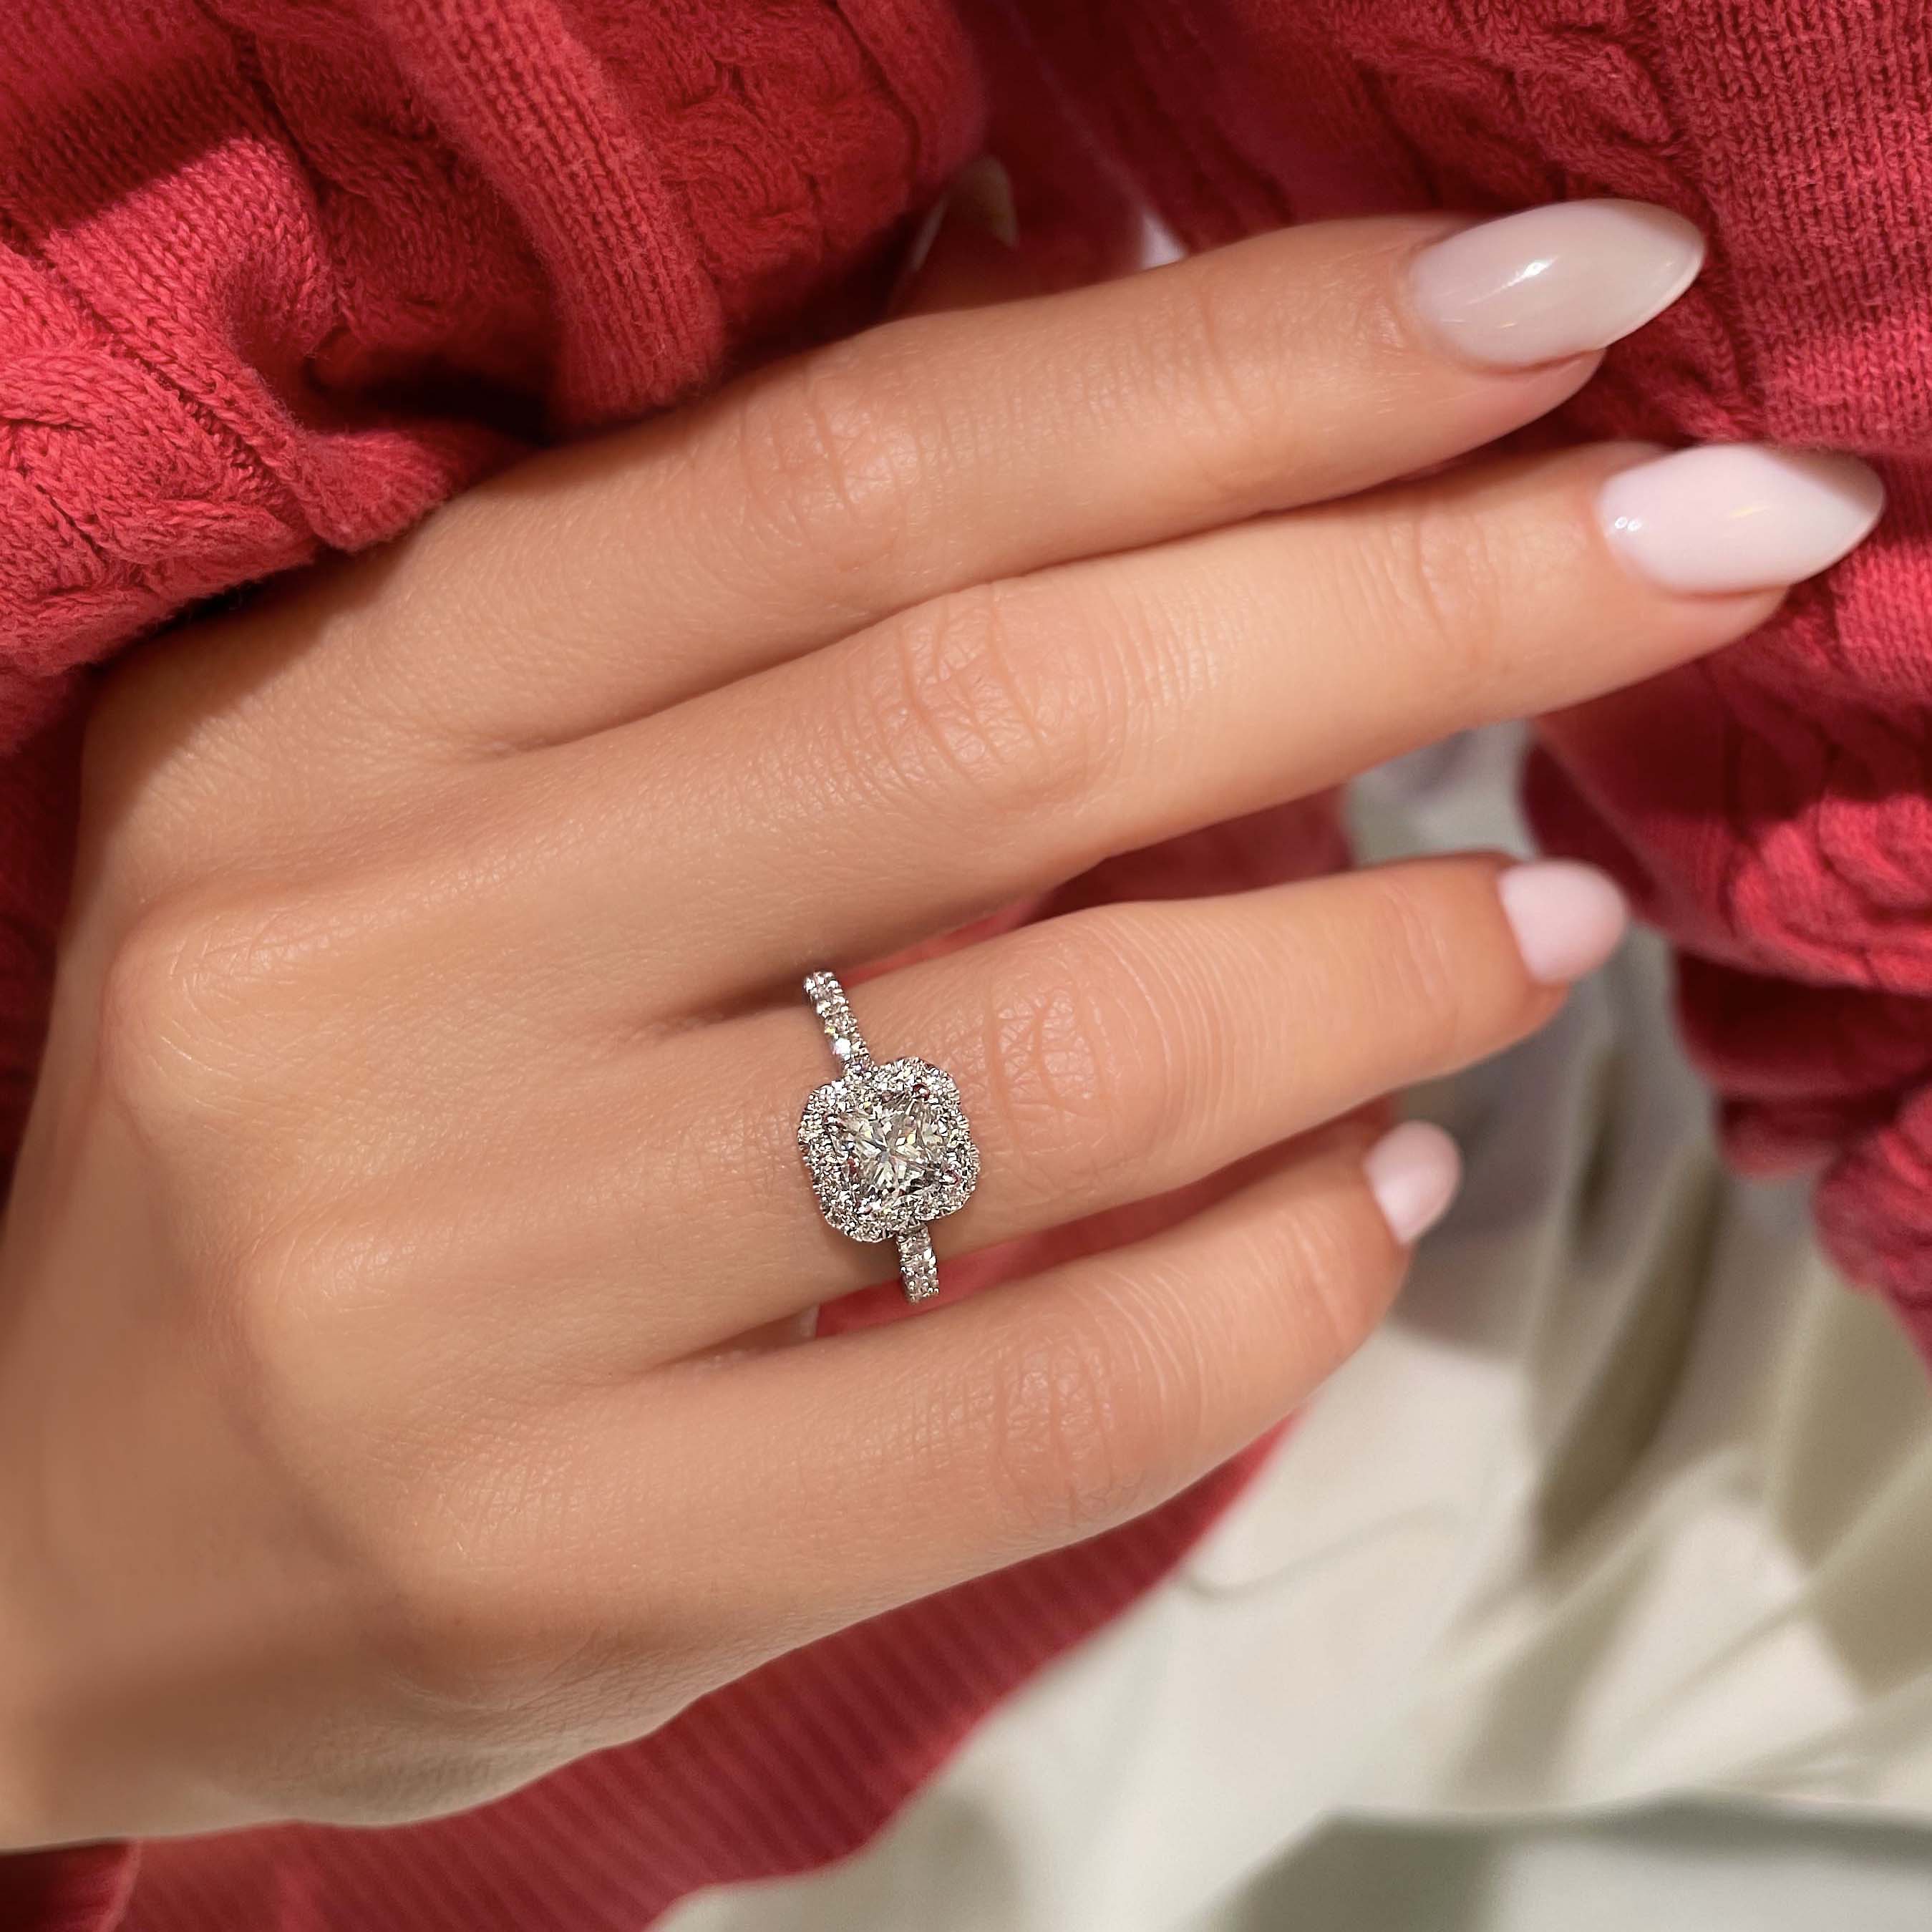 Cora Diamond Engagement Ring -Platinum